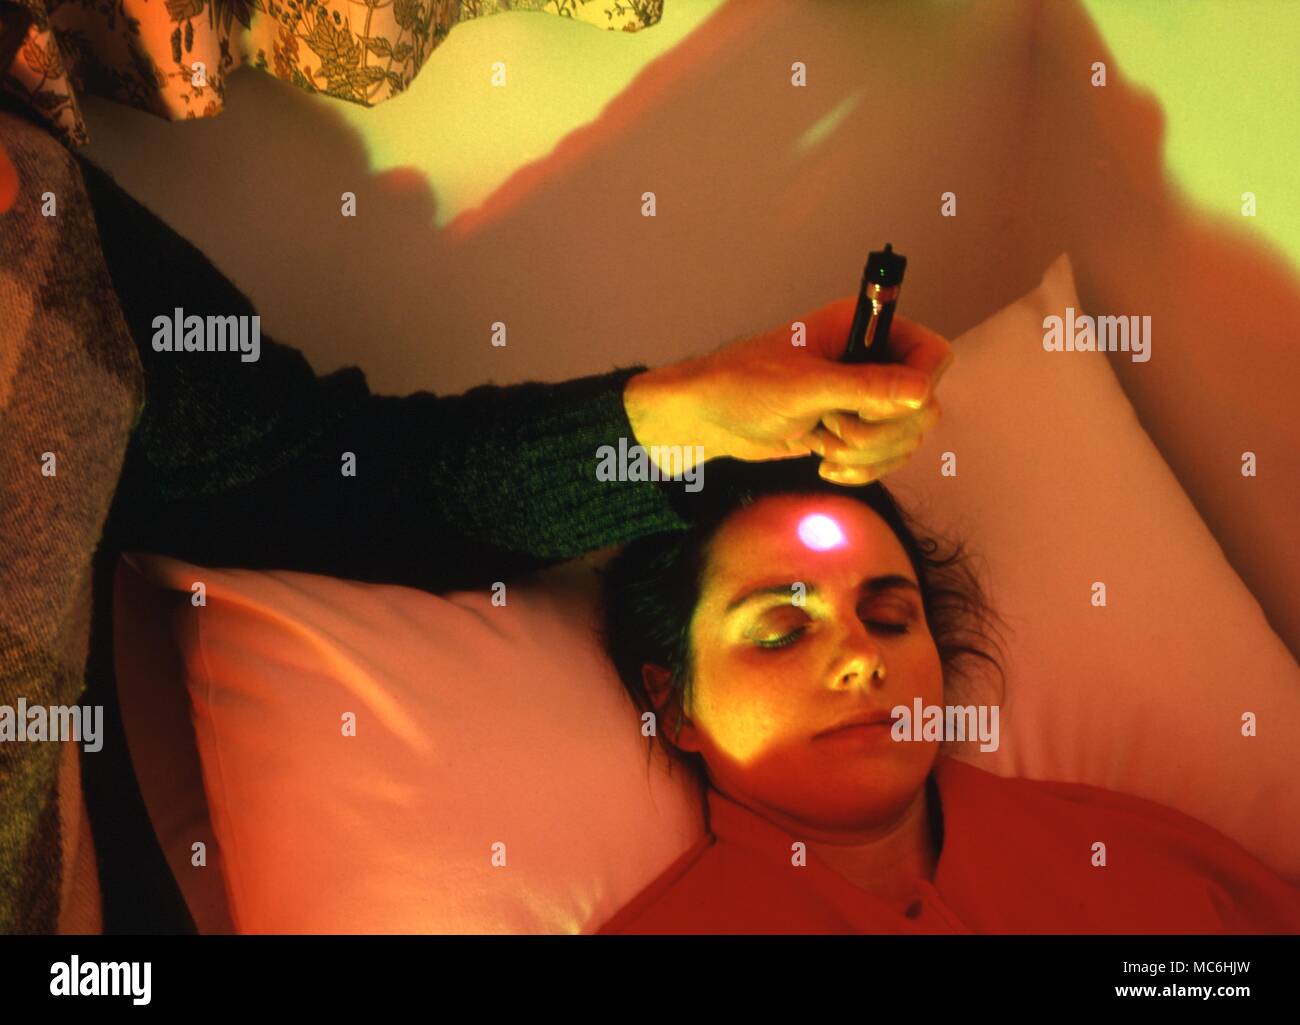 Farbe Therapie. Projiziert ein Licht auf die frontale Chakra, in einem Raum, beleuchtet mit kostenlosen Farbe. Stockfoto